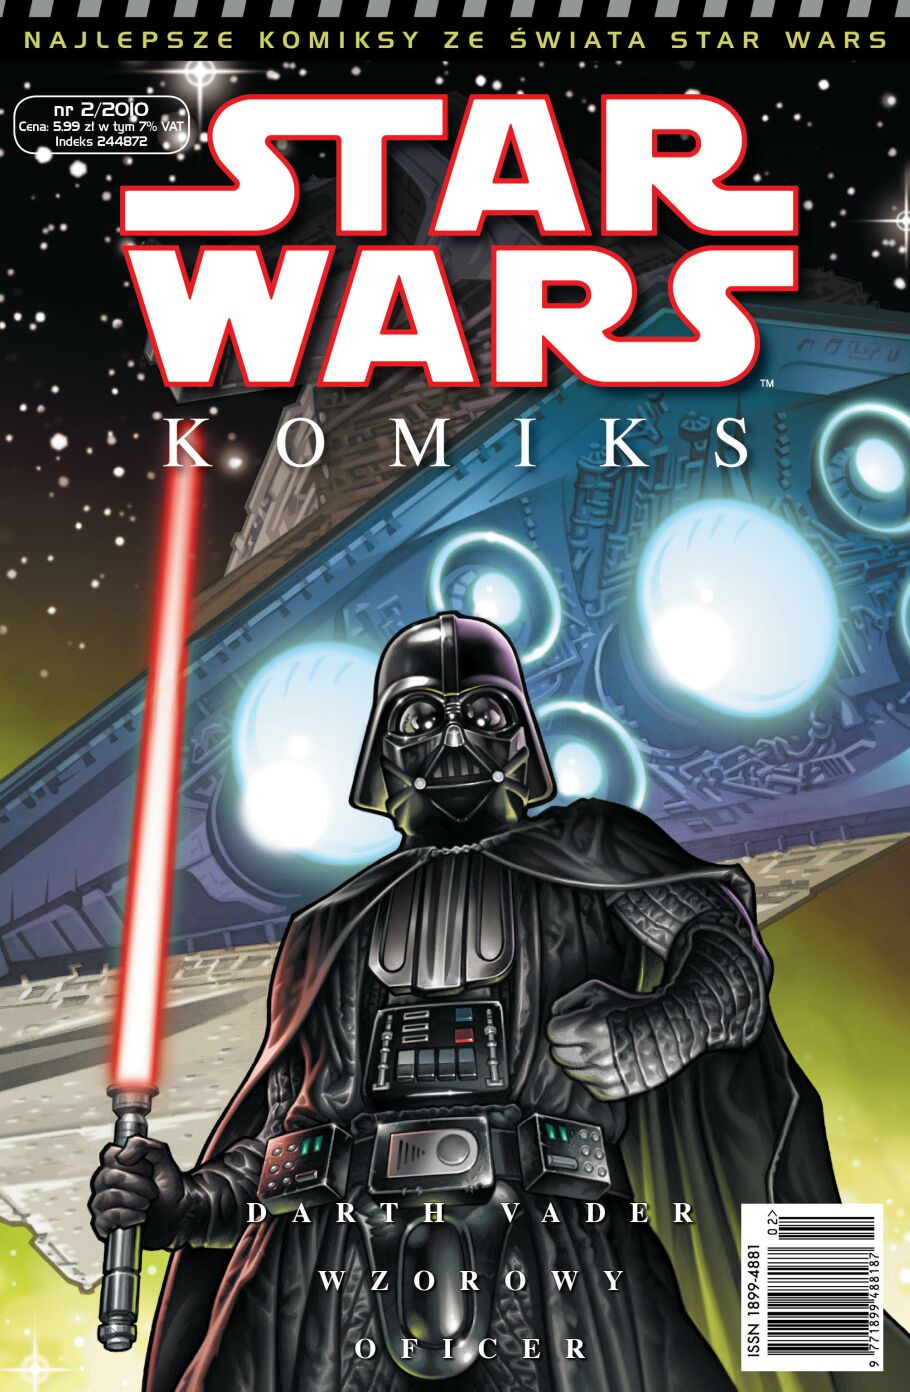 Star Wars Komiks #18 (2/2010)